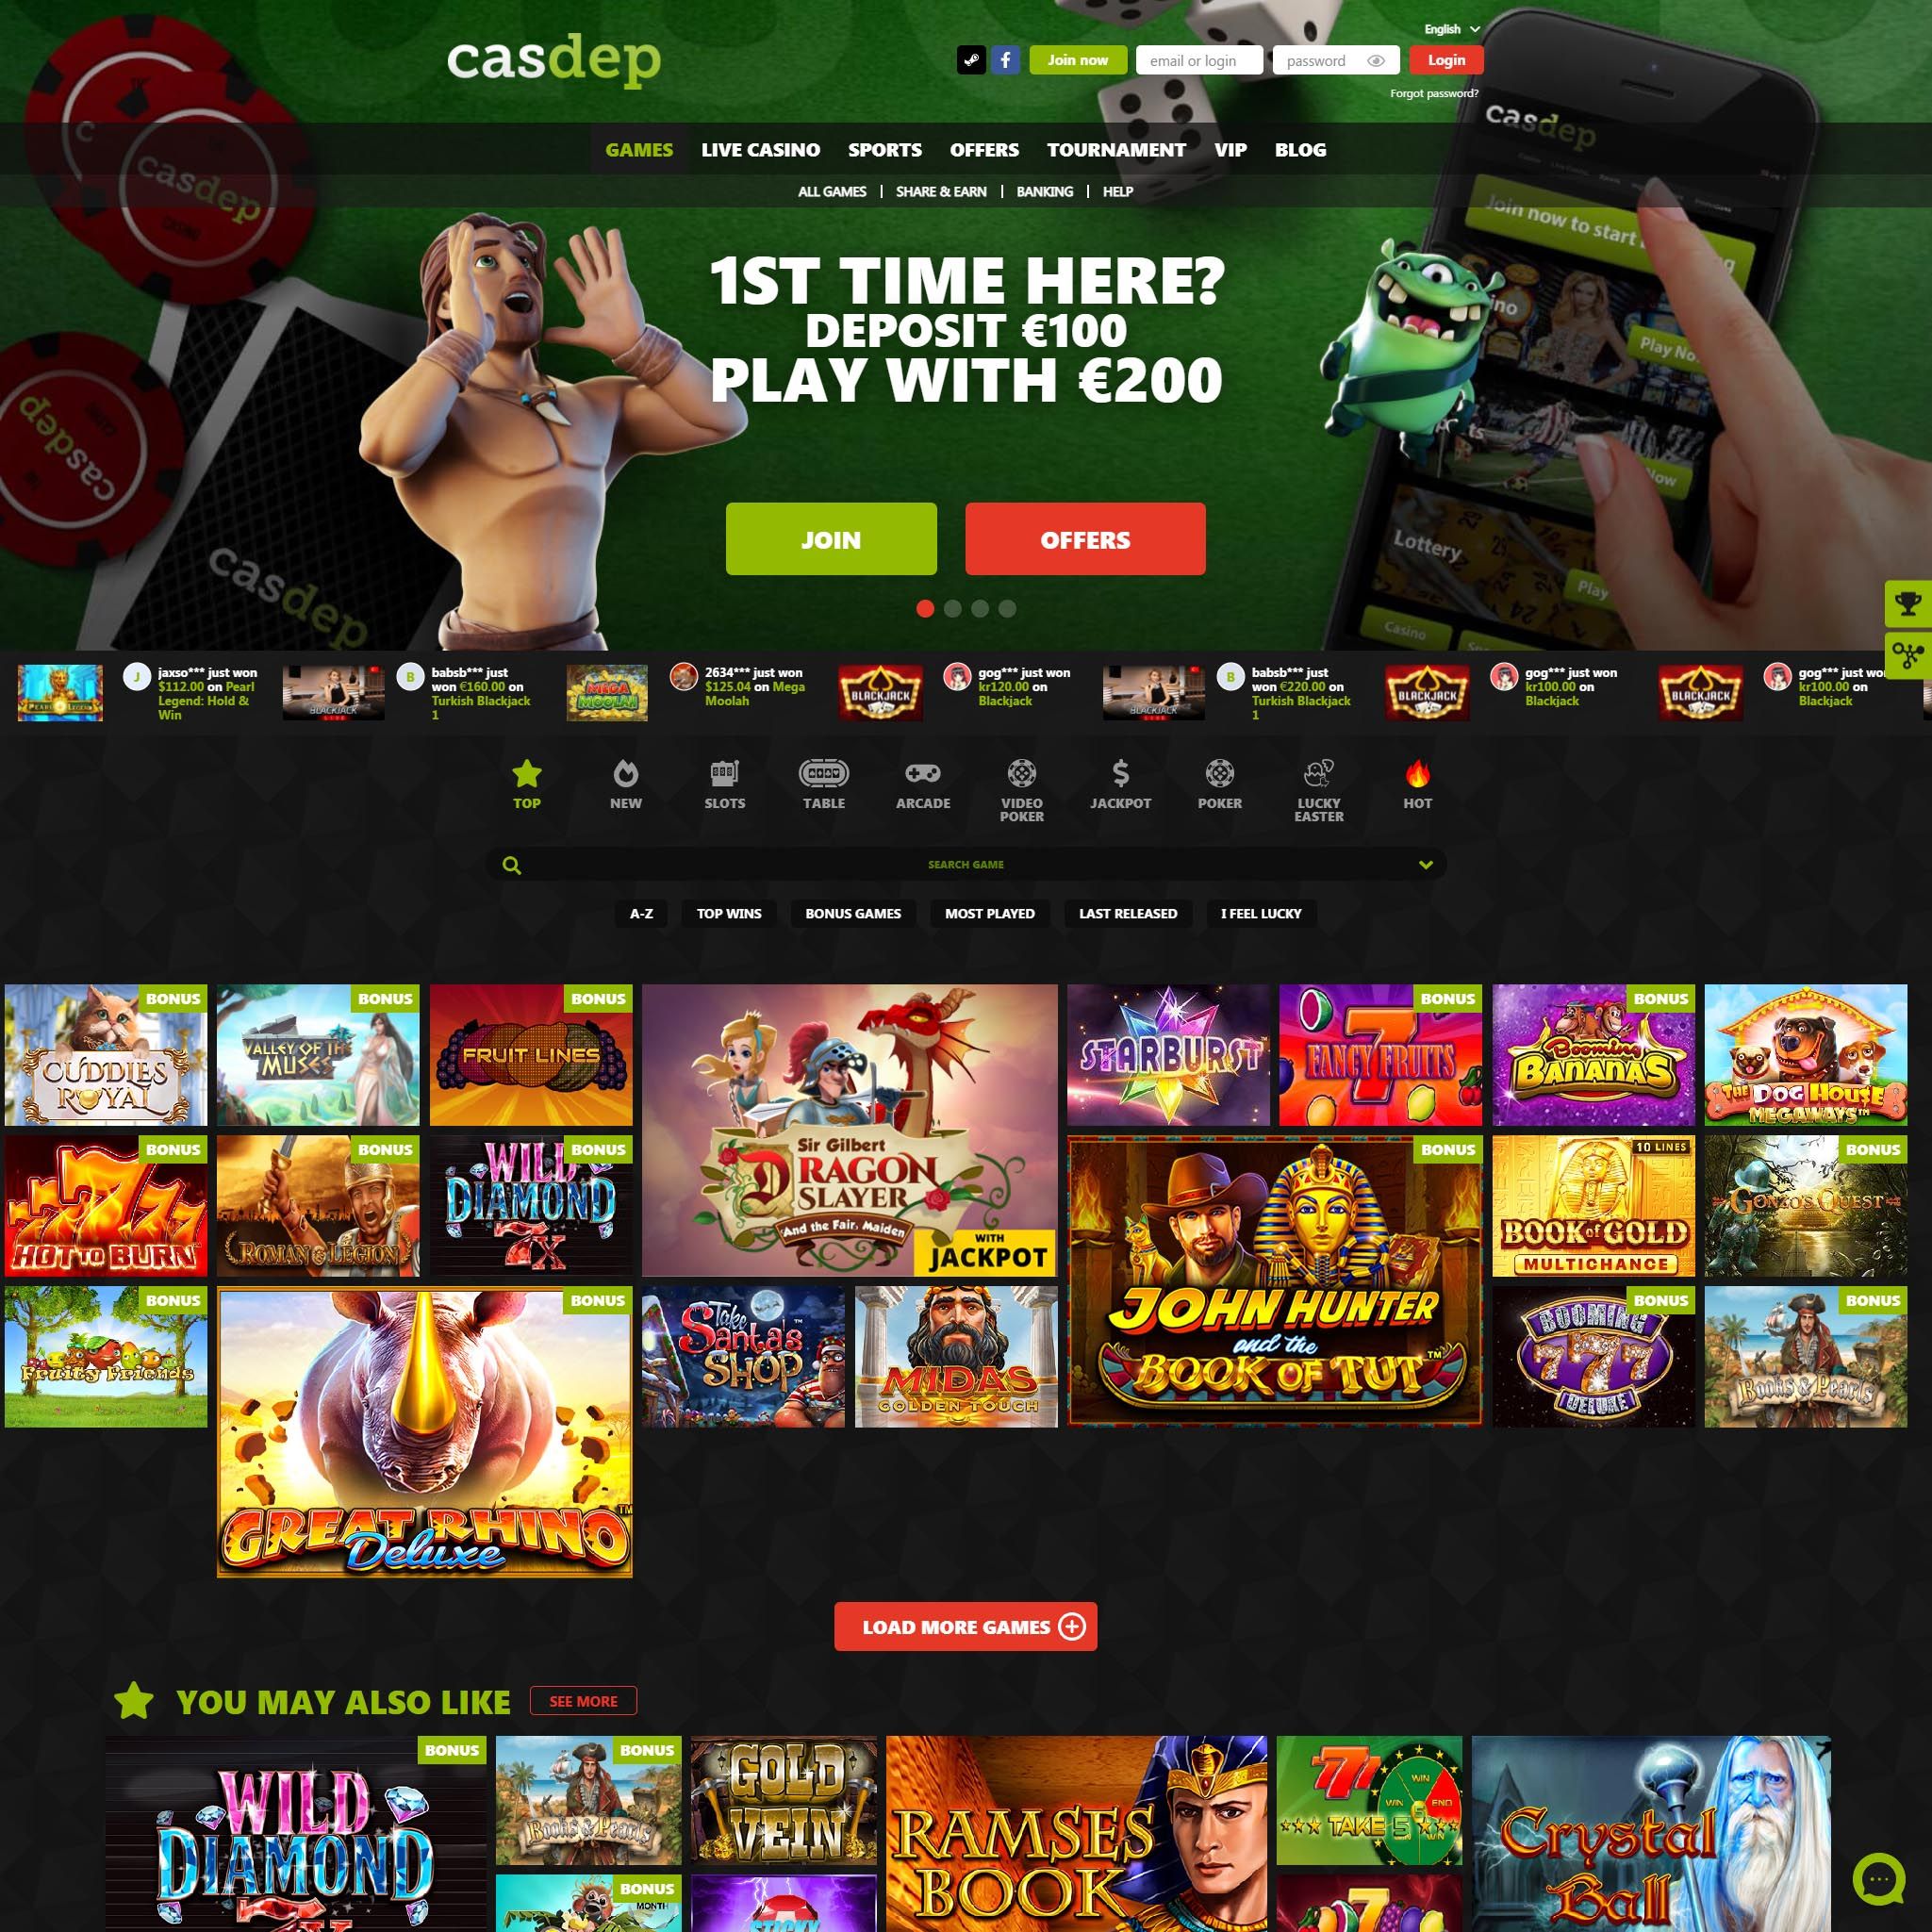 Pelaa netticasino Casdep voittaaksesi oikeaa rahaa – oikean rahan online casino! Vertaa kaikki nettikasinot ja löydä parhaat casinot Suomessa.